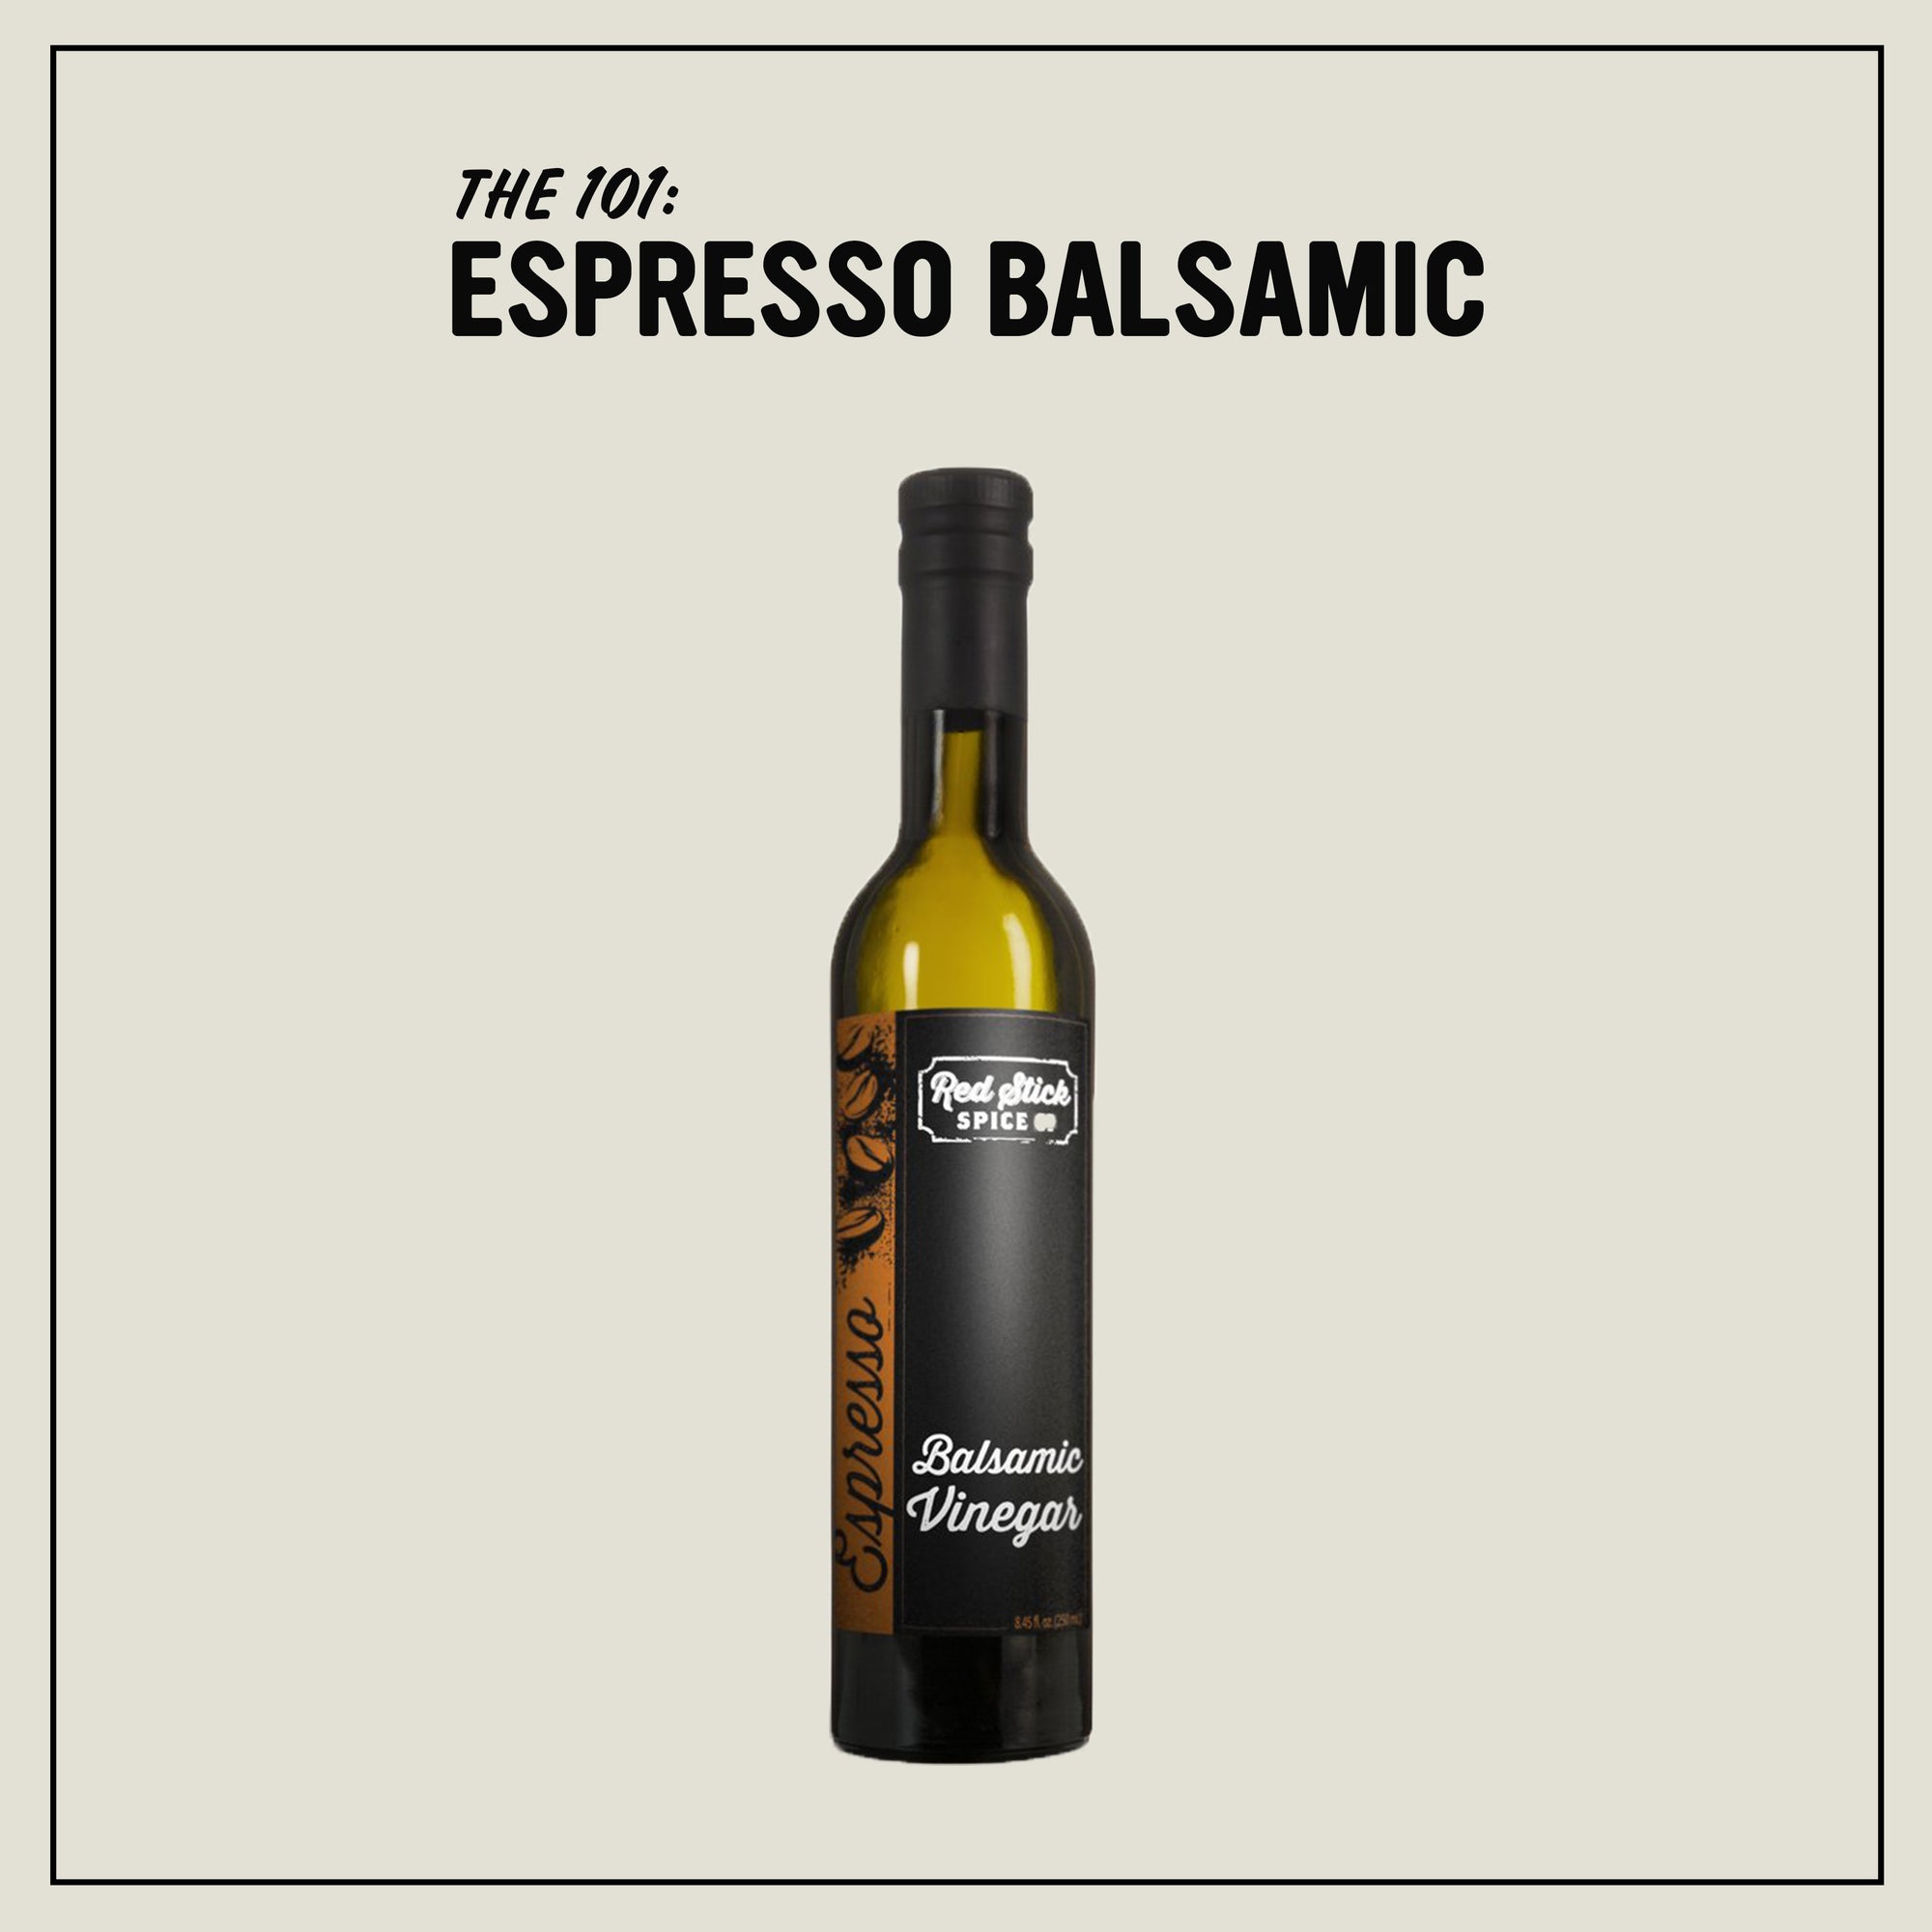 The 101: Espresso Balsamic Vinegar